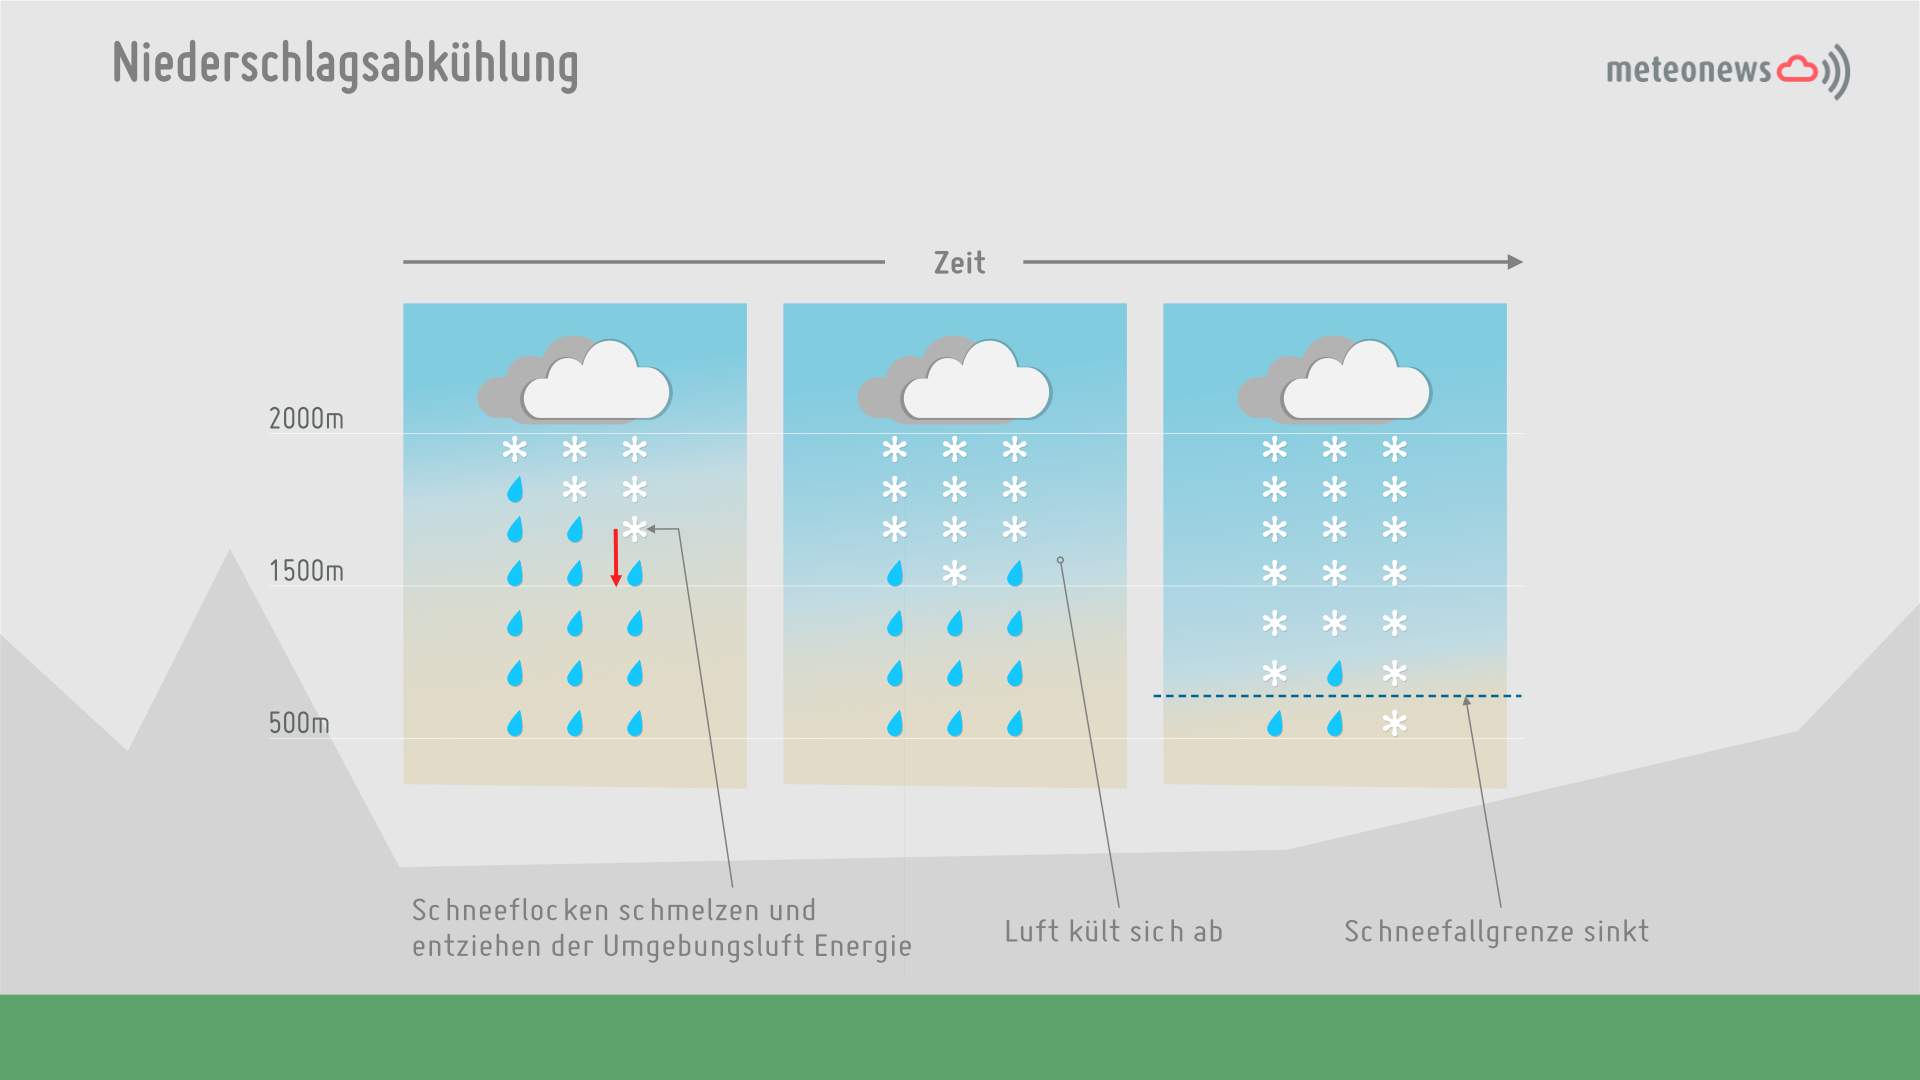 Abb. 2: Prinzip der Niederschlagsabkühlung; Quelle: MeteoNews